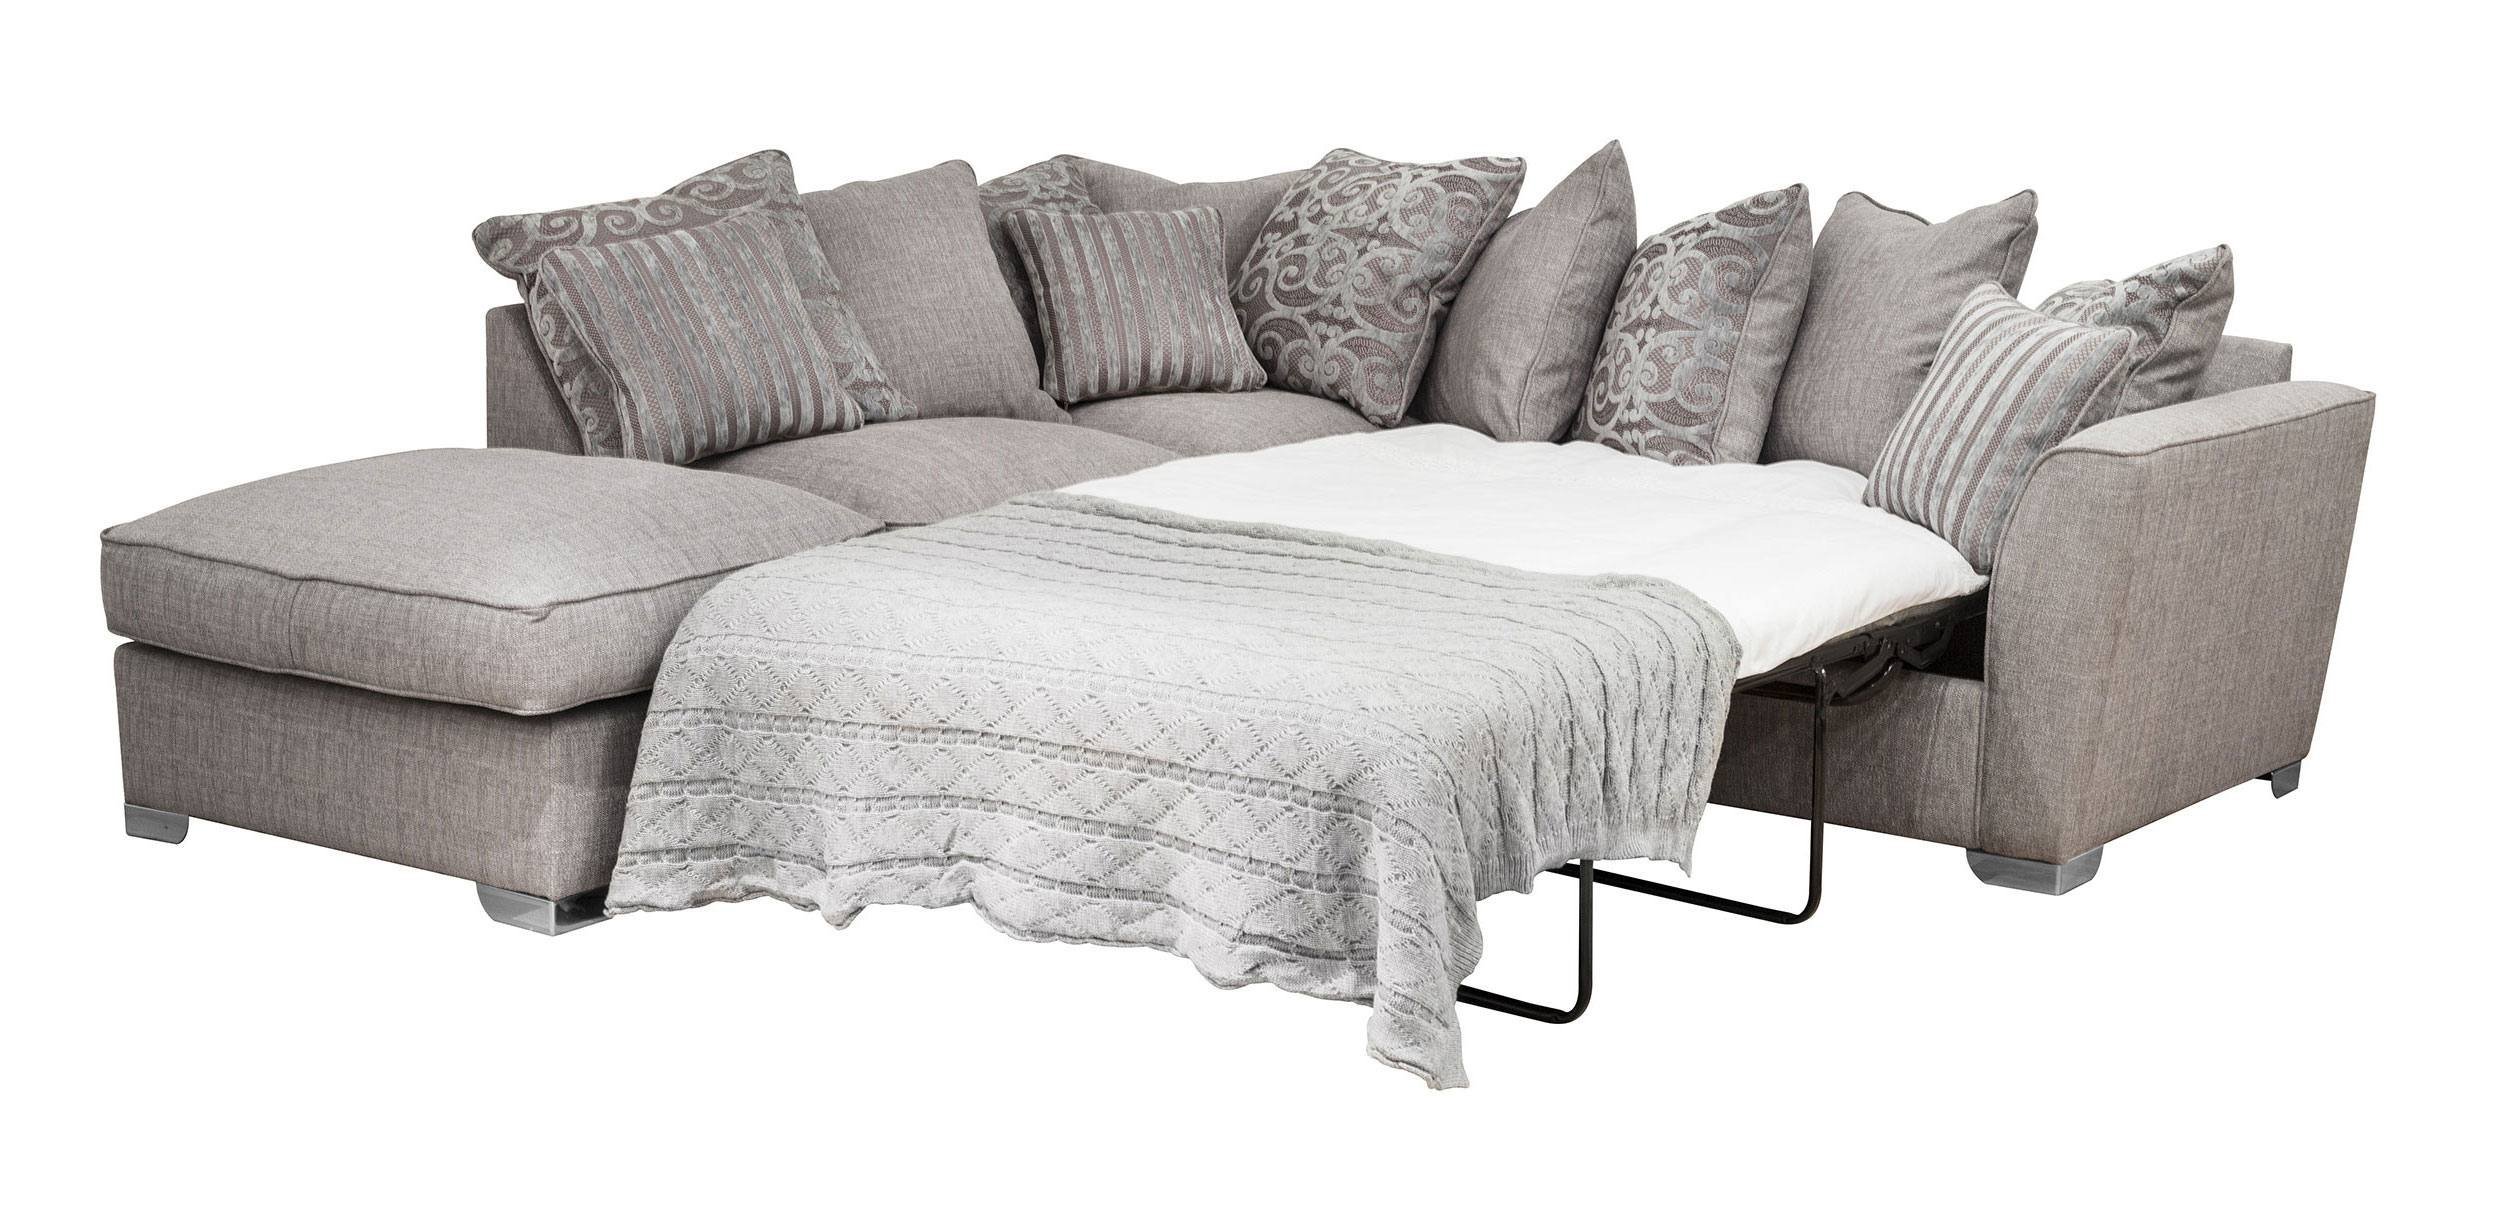 corner sofa bed deals